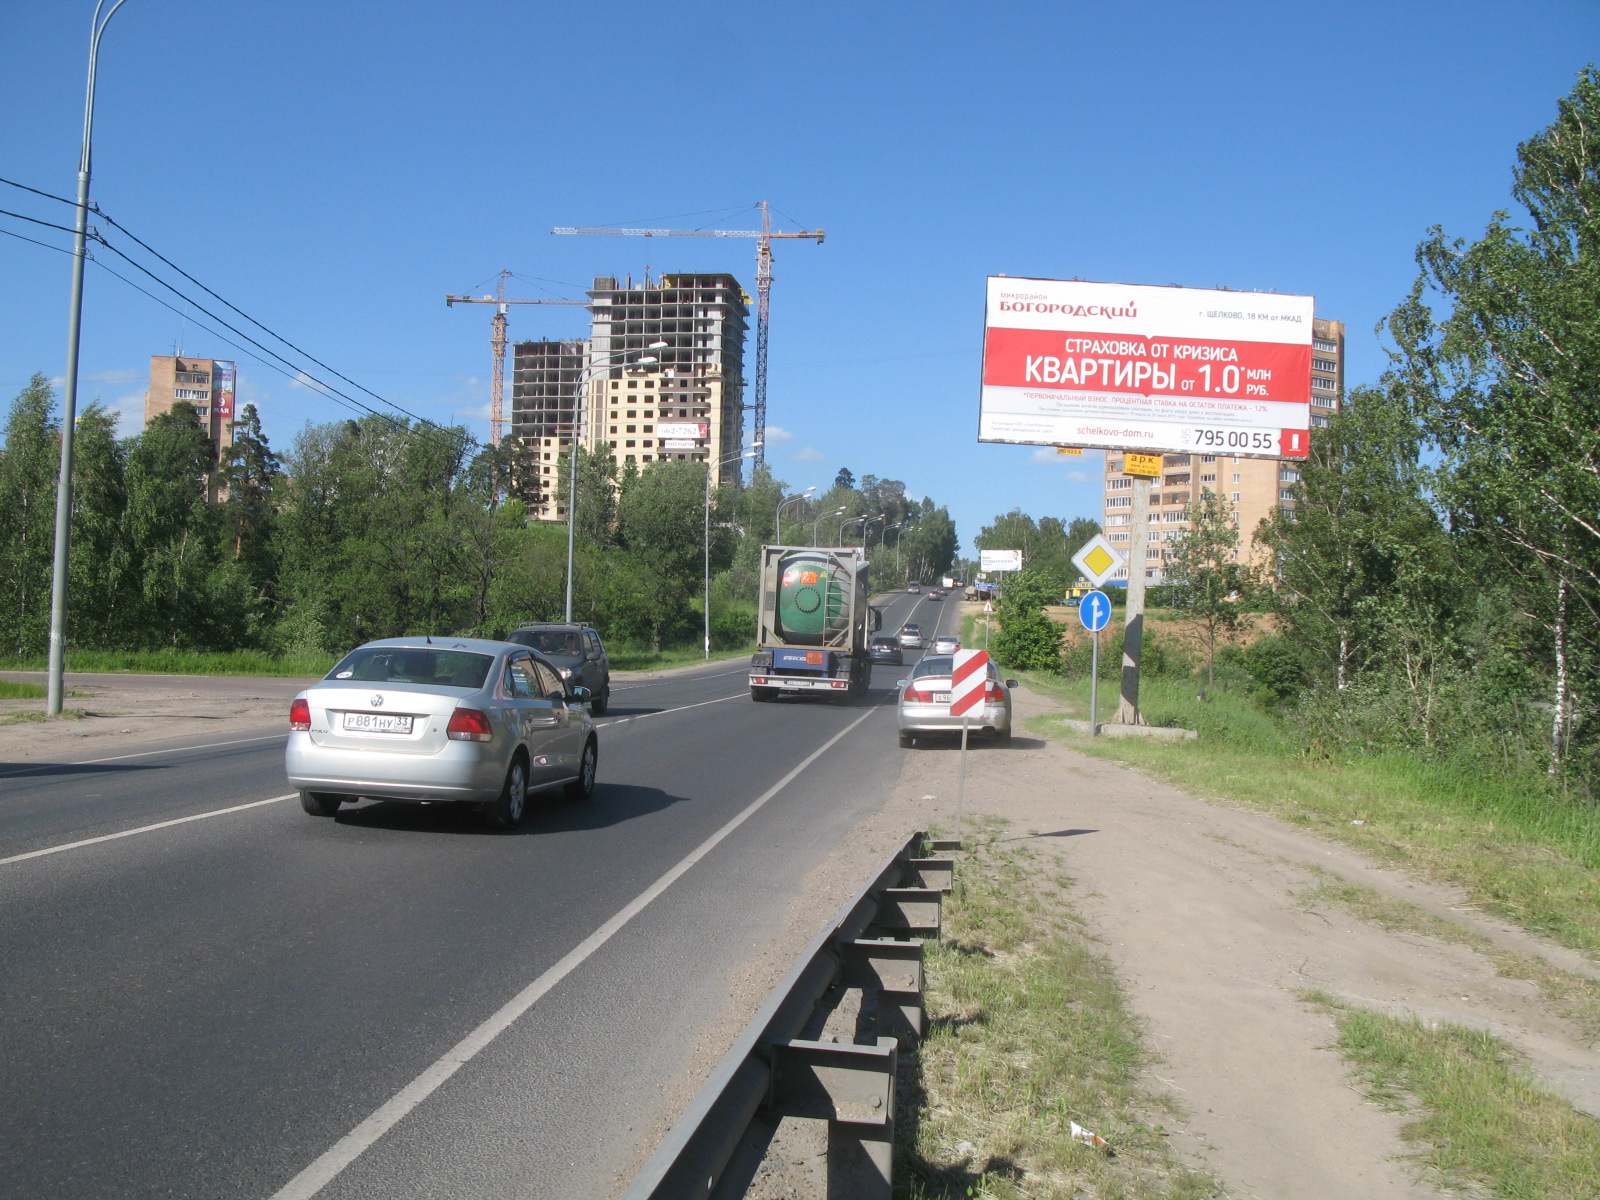 Щелковское ш., 37,15 км, (21,15 от МКАД), справа, г.Щелково